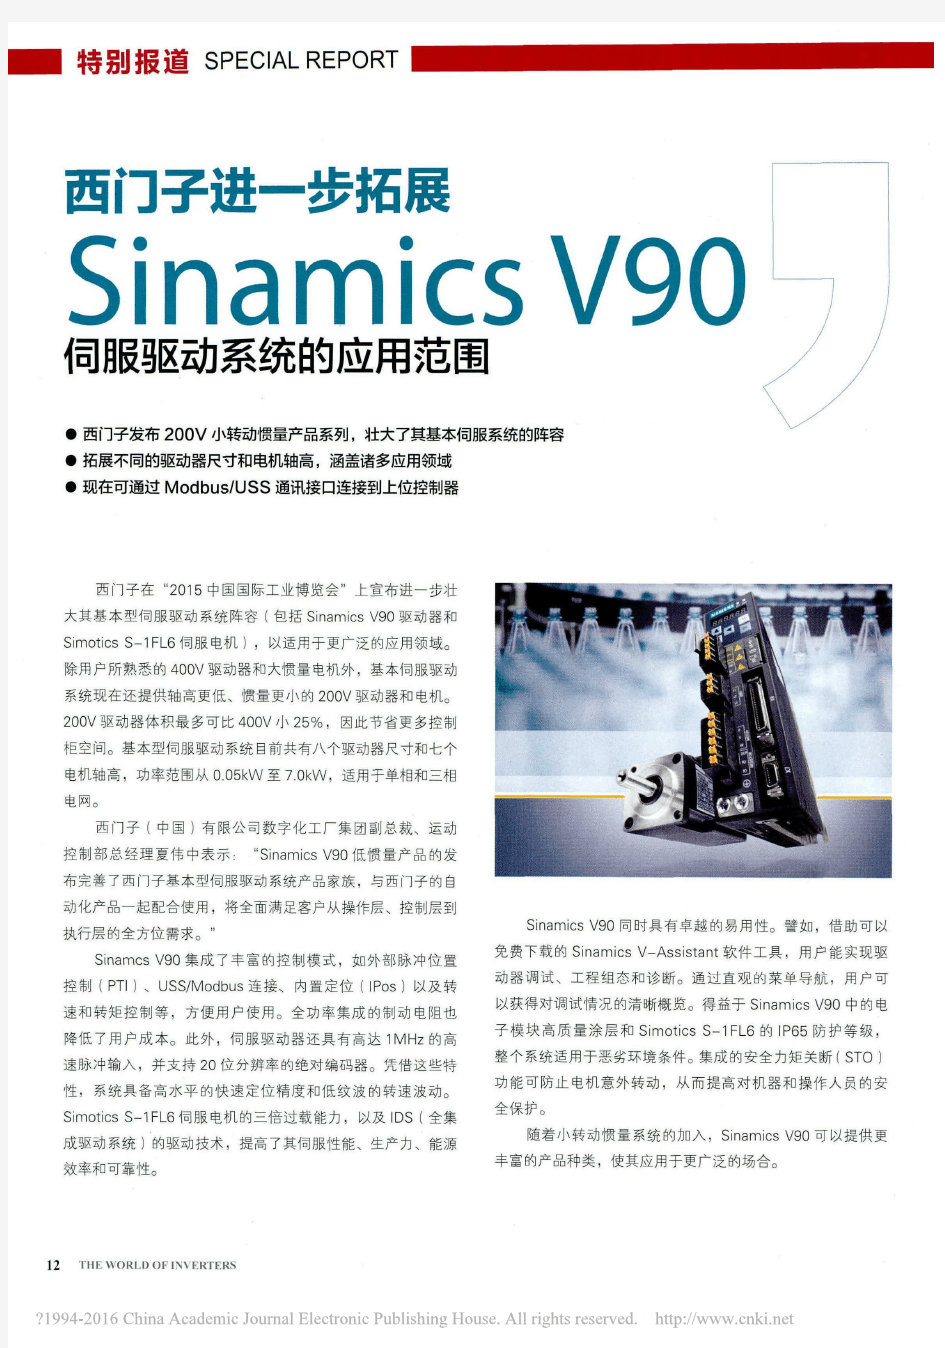 西门子进一步拓展SinamicsV90伺服驱动系统的应用